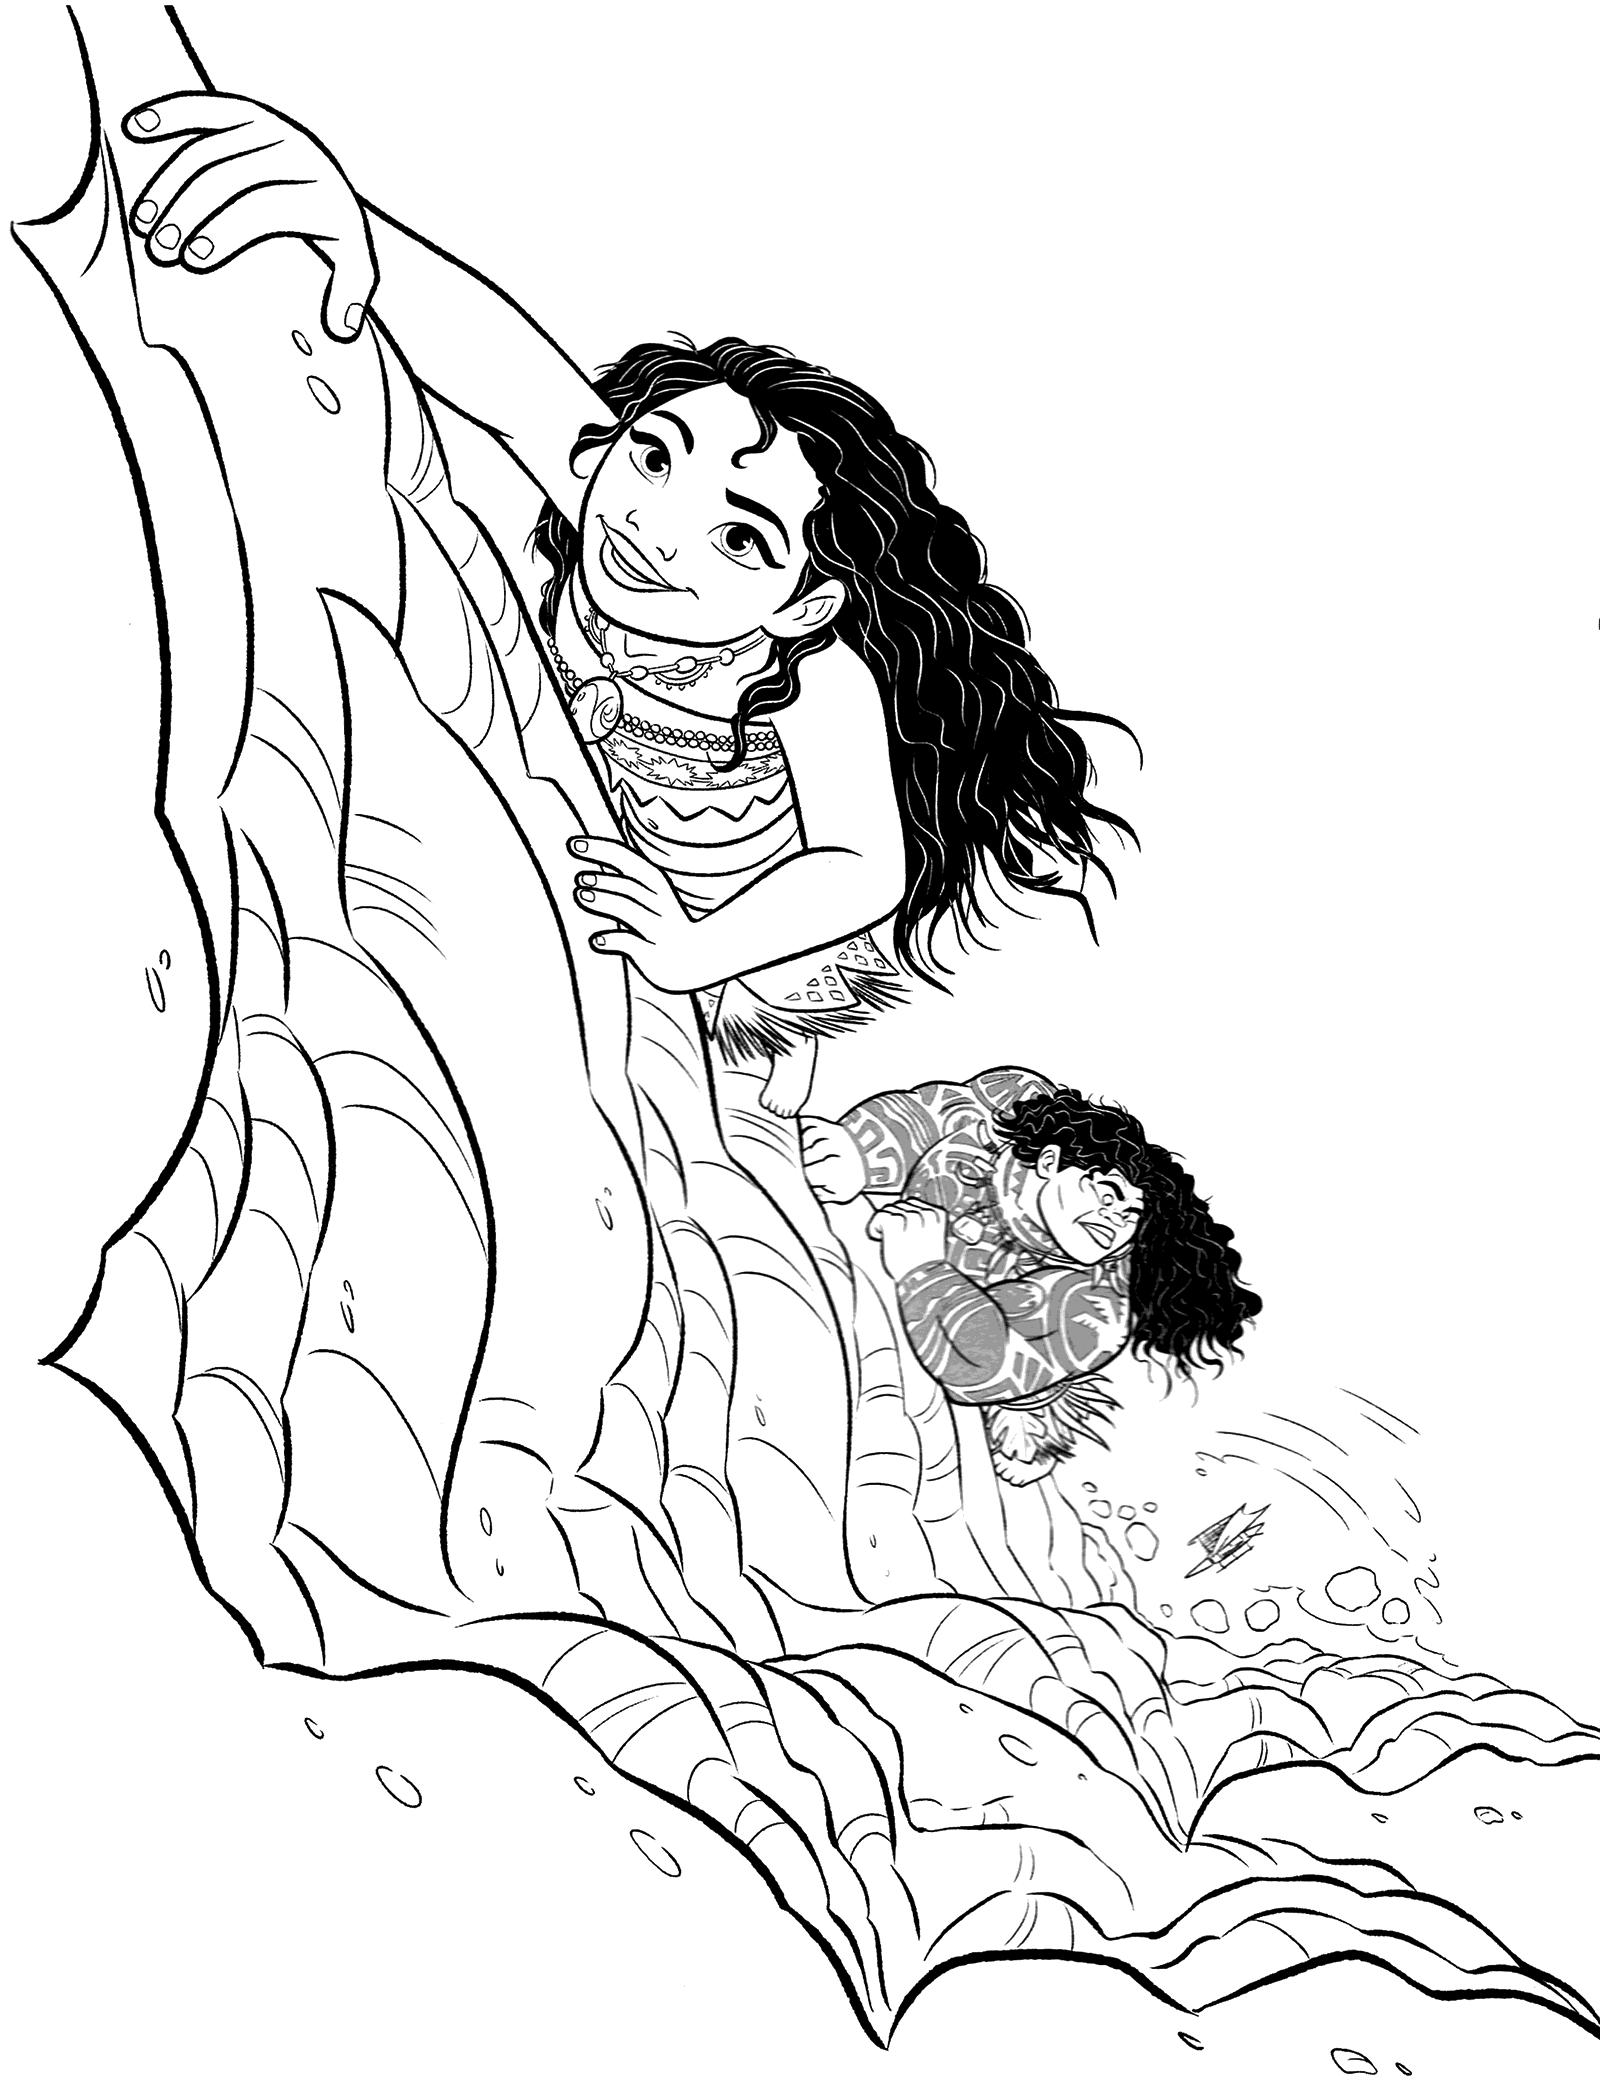 Раскраски к современному мультфильму Моана для детей  Раскраска Моана карабкается с Мауи по скале